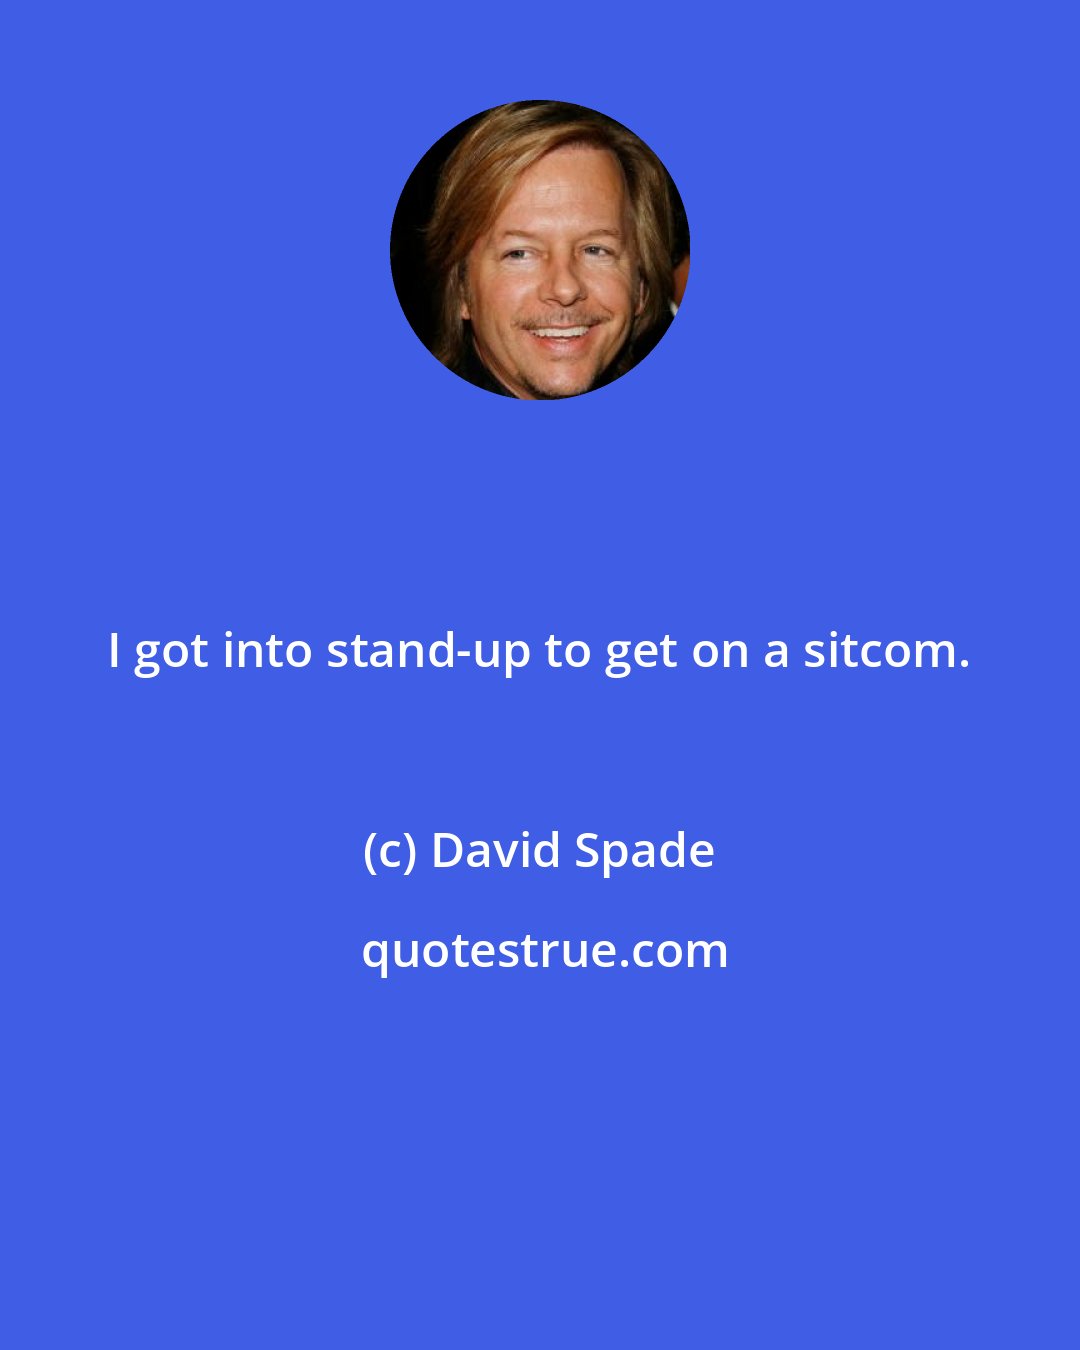 David Spade: I got into stand-up to get on a sitcom.